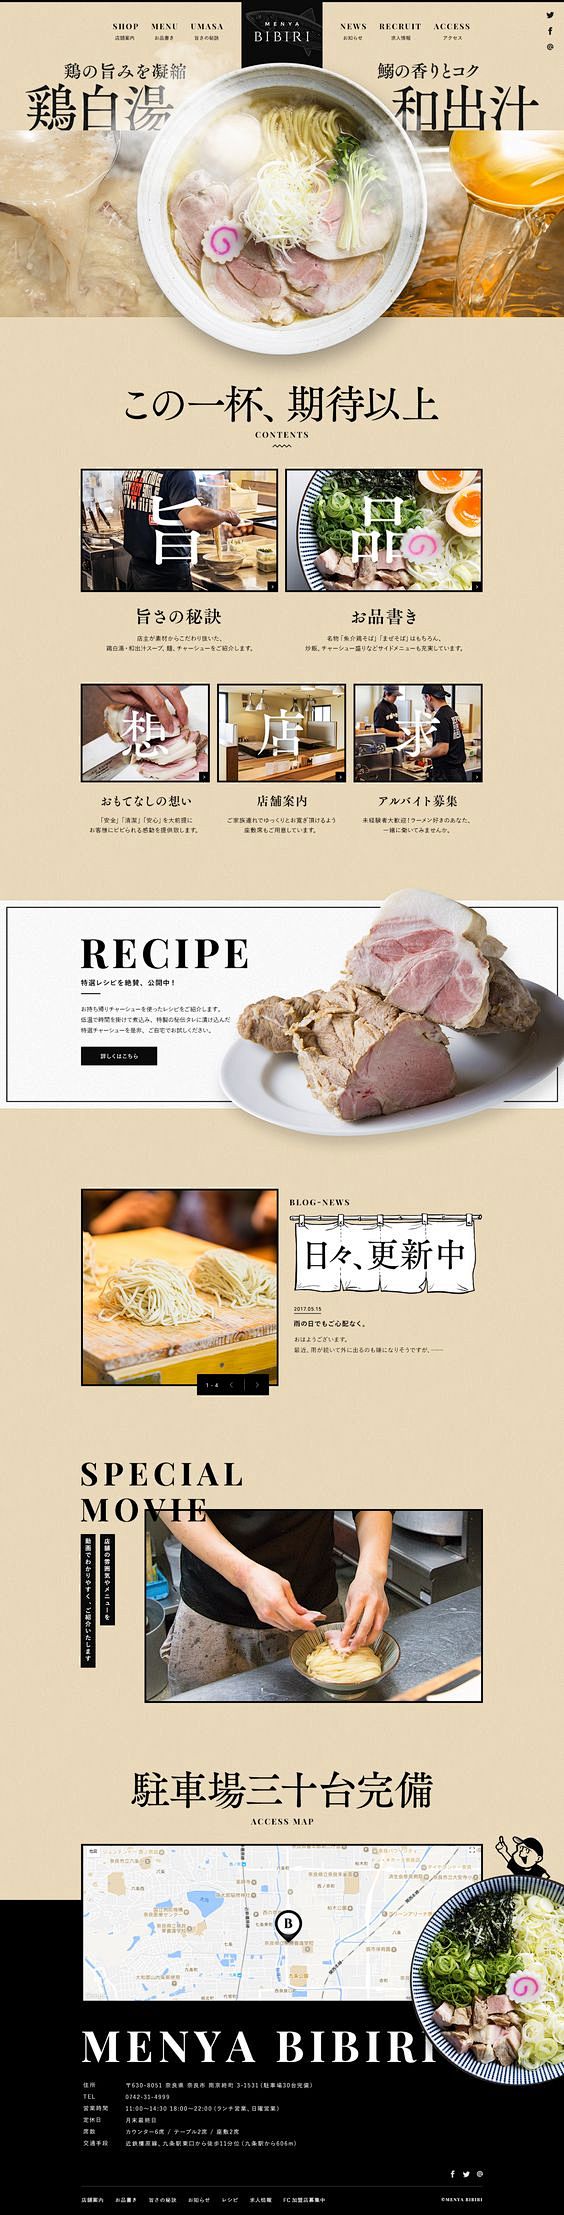 日式 食品 排版 网页设计